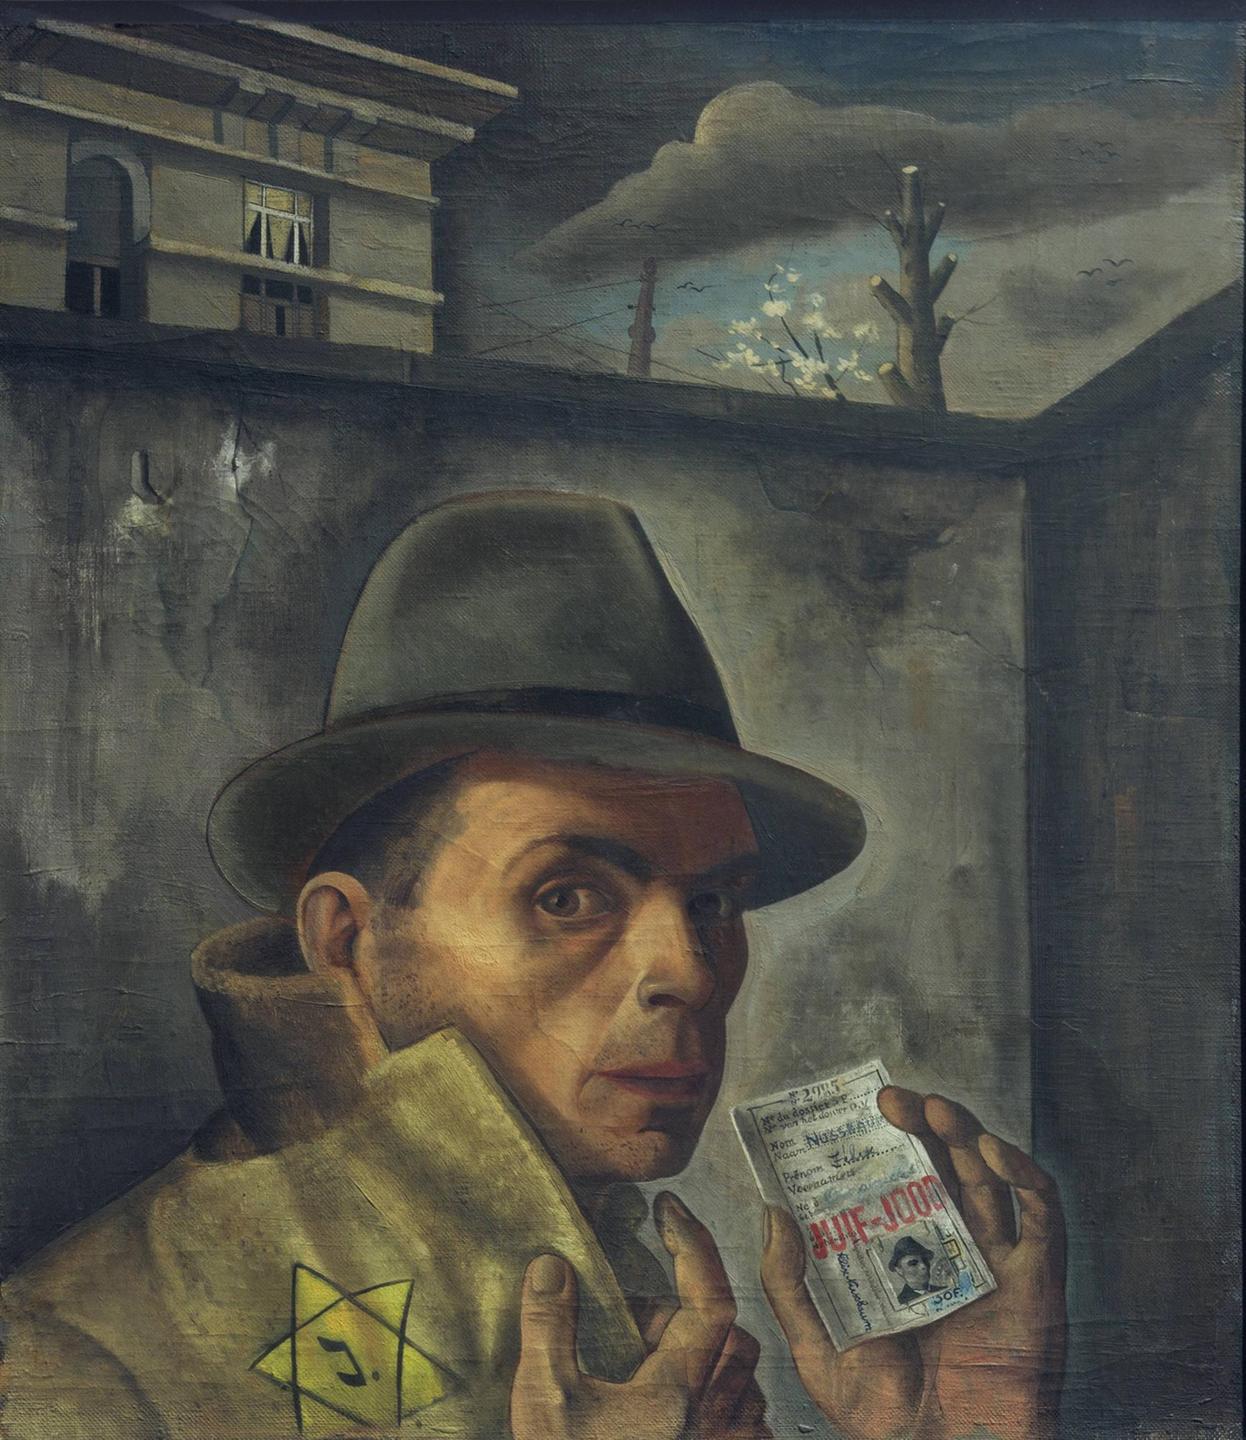 Das letzte Selbstporträt von Felix Nussbaum (1943, Öl auf Leinwand, 56 × 49 cm. Sammlung der Niedersächsischen Sparkassenstiftung).